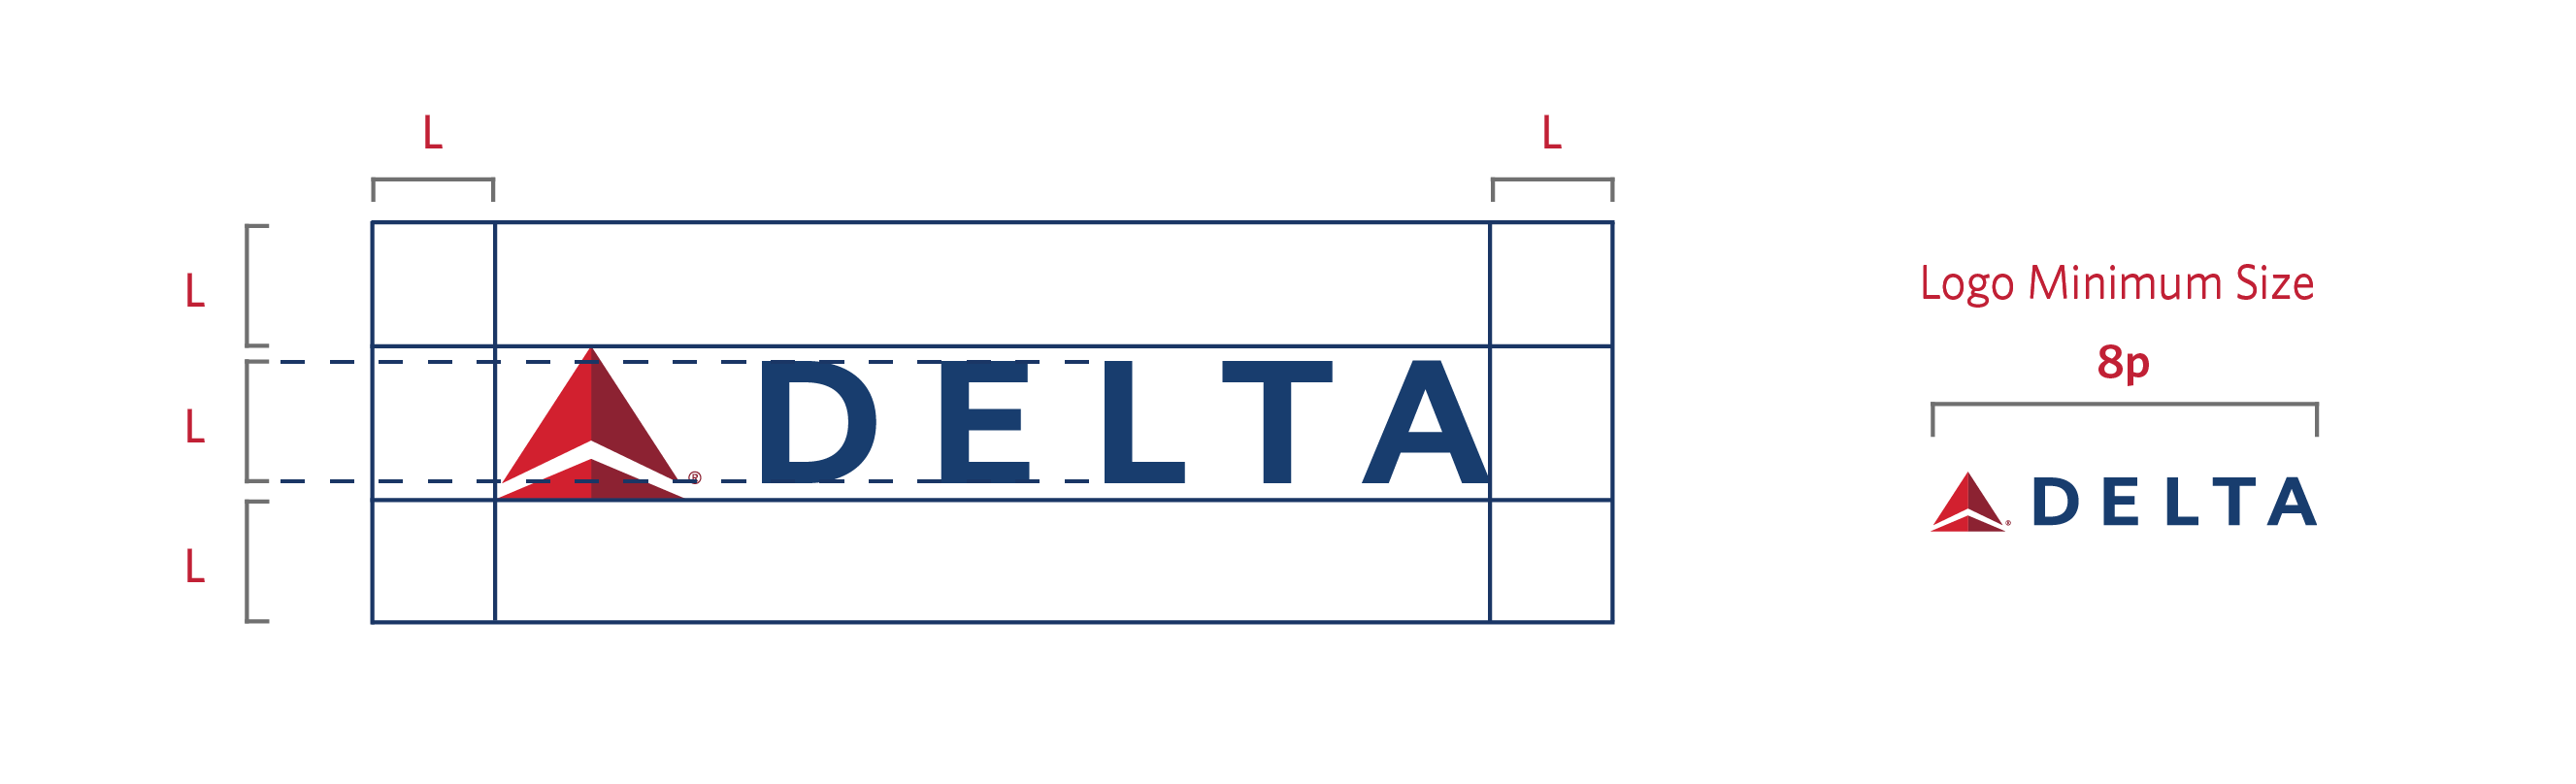 Delta Logo - Delta Logos | Delta News Hub